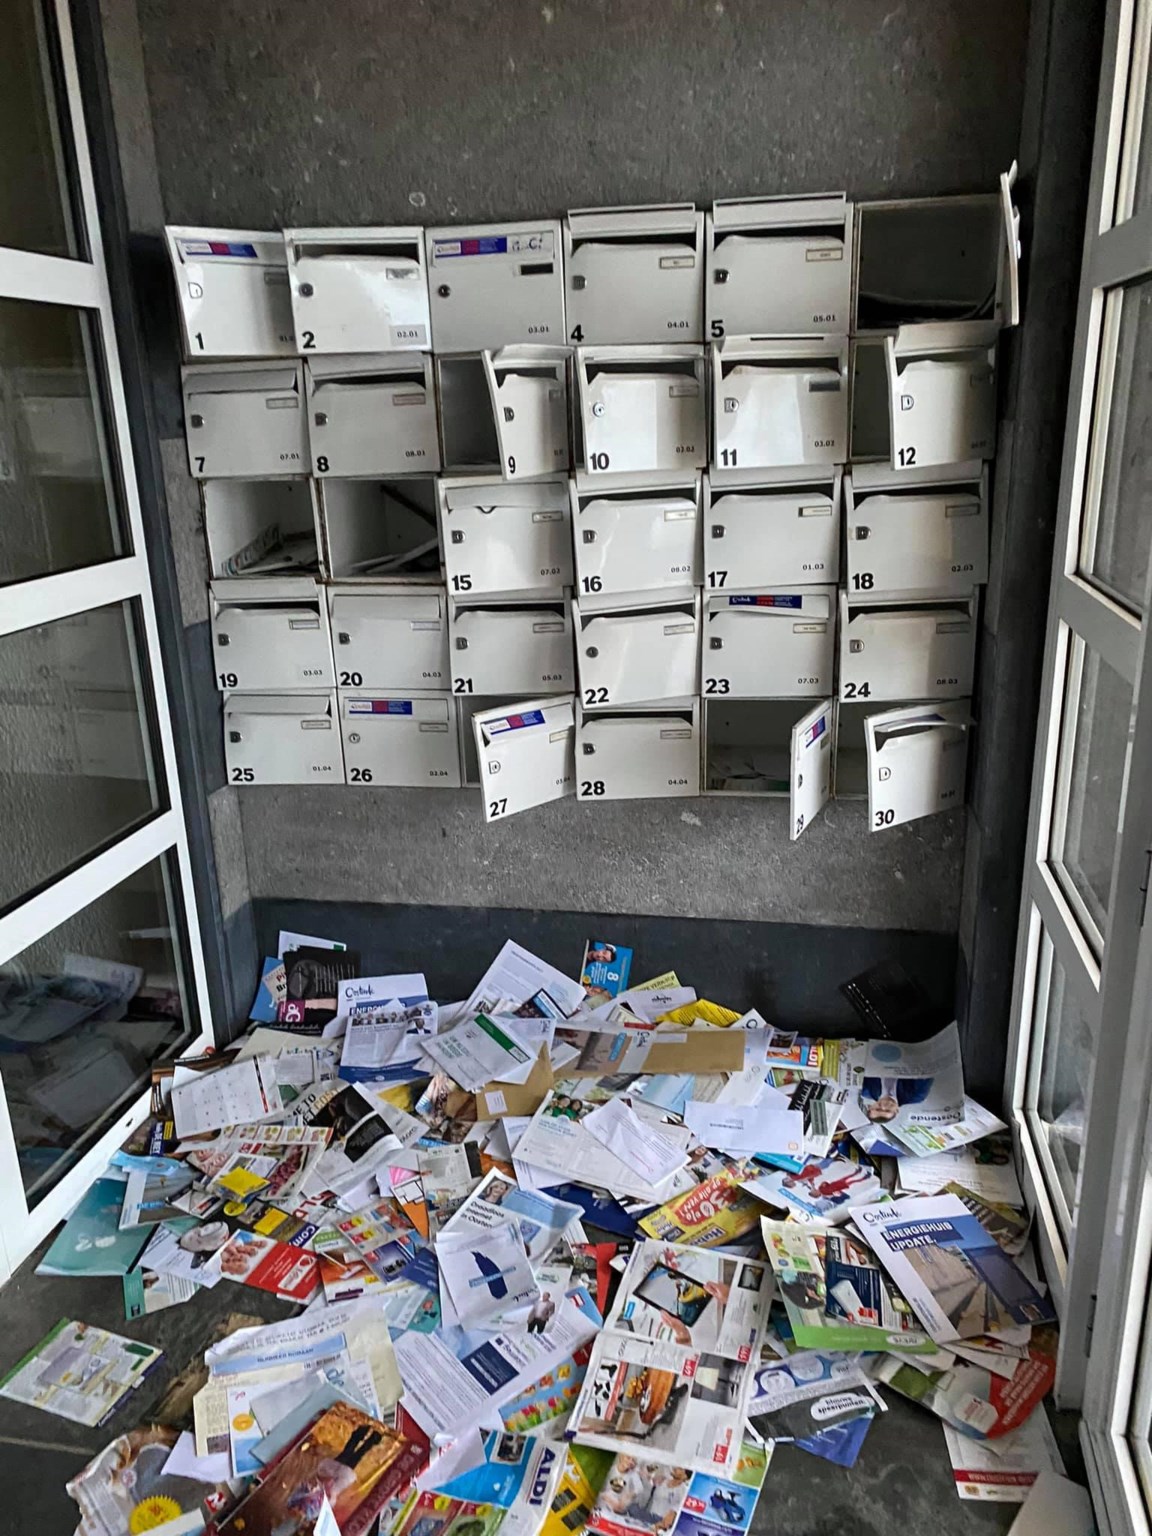 Anoi Persoon belast met sportgame Rusteloos Dieven breken massaal brievenbussen open | De Standaard Mobile